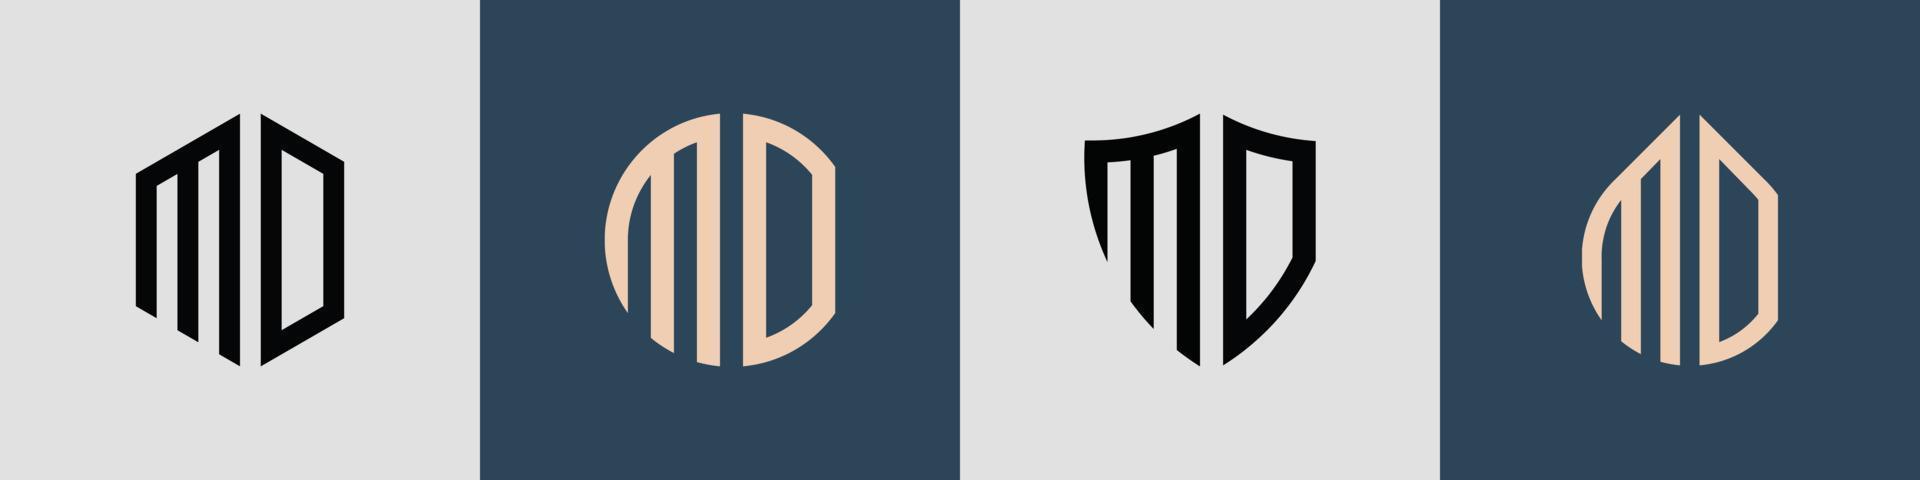 Paquete creativo de diseños de logotipo de letras iniciales simples mo. vector